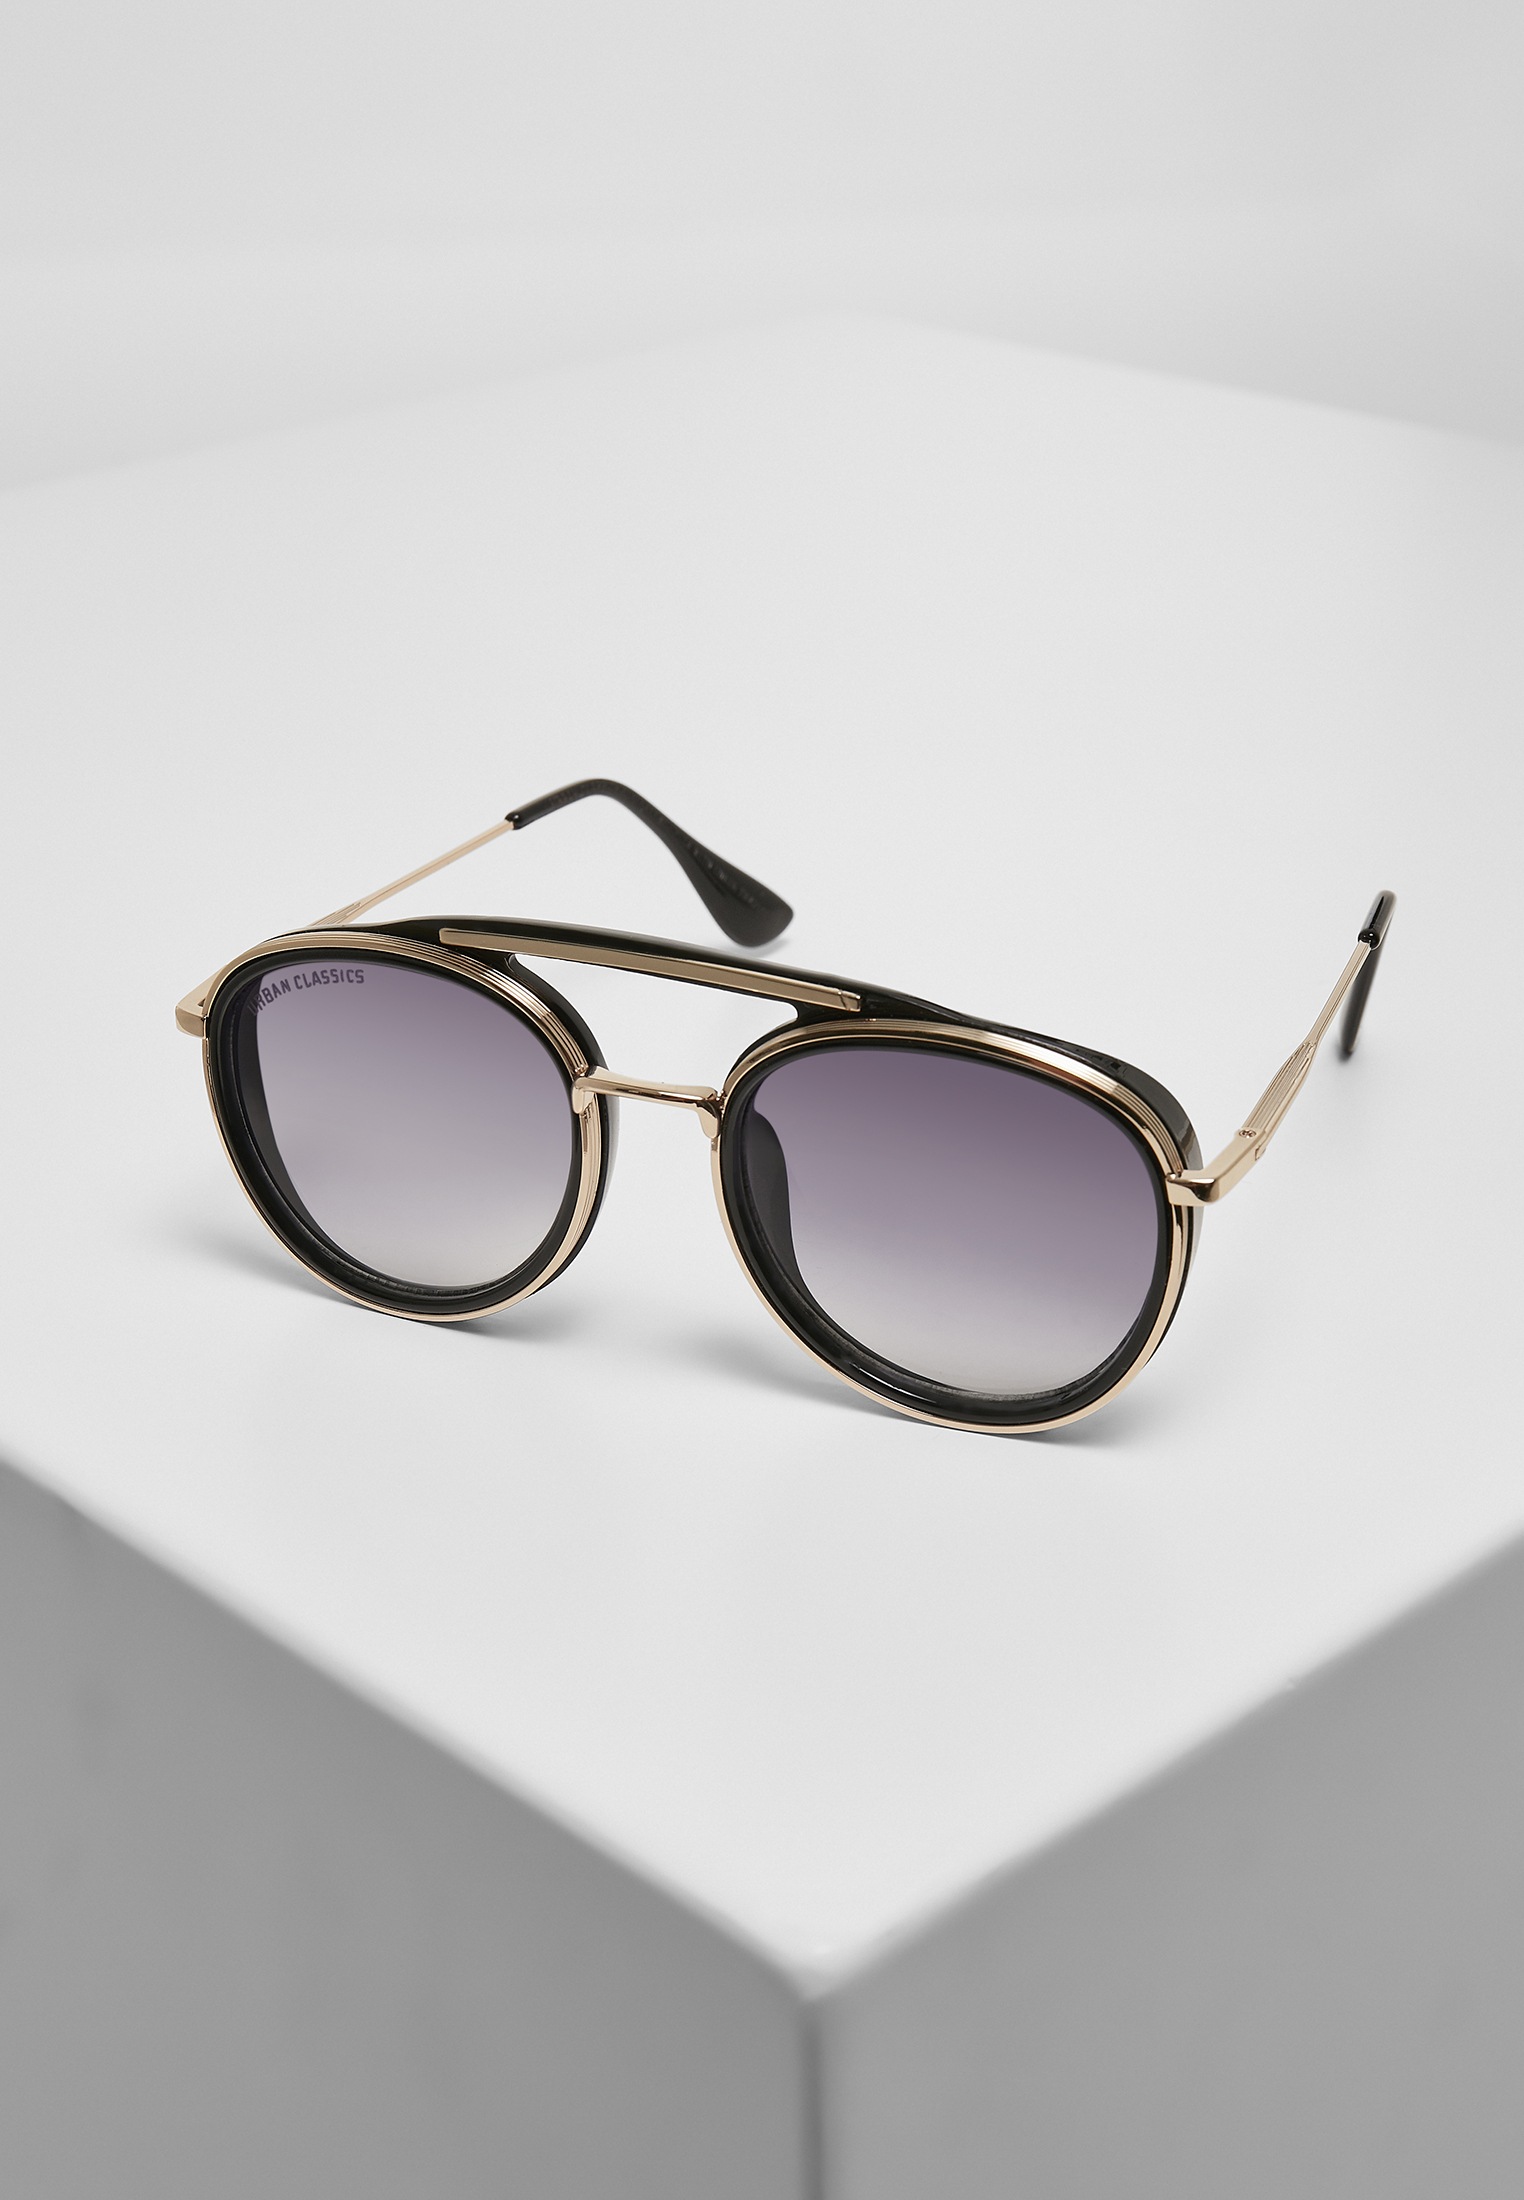 URBAN Ibiza Sunglasses CLASSICS BAUR online With kaufen Chain« | »Unisex Sonnenbrille